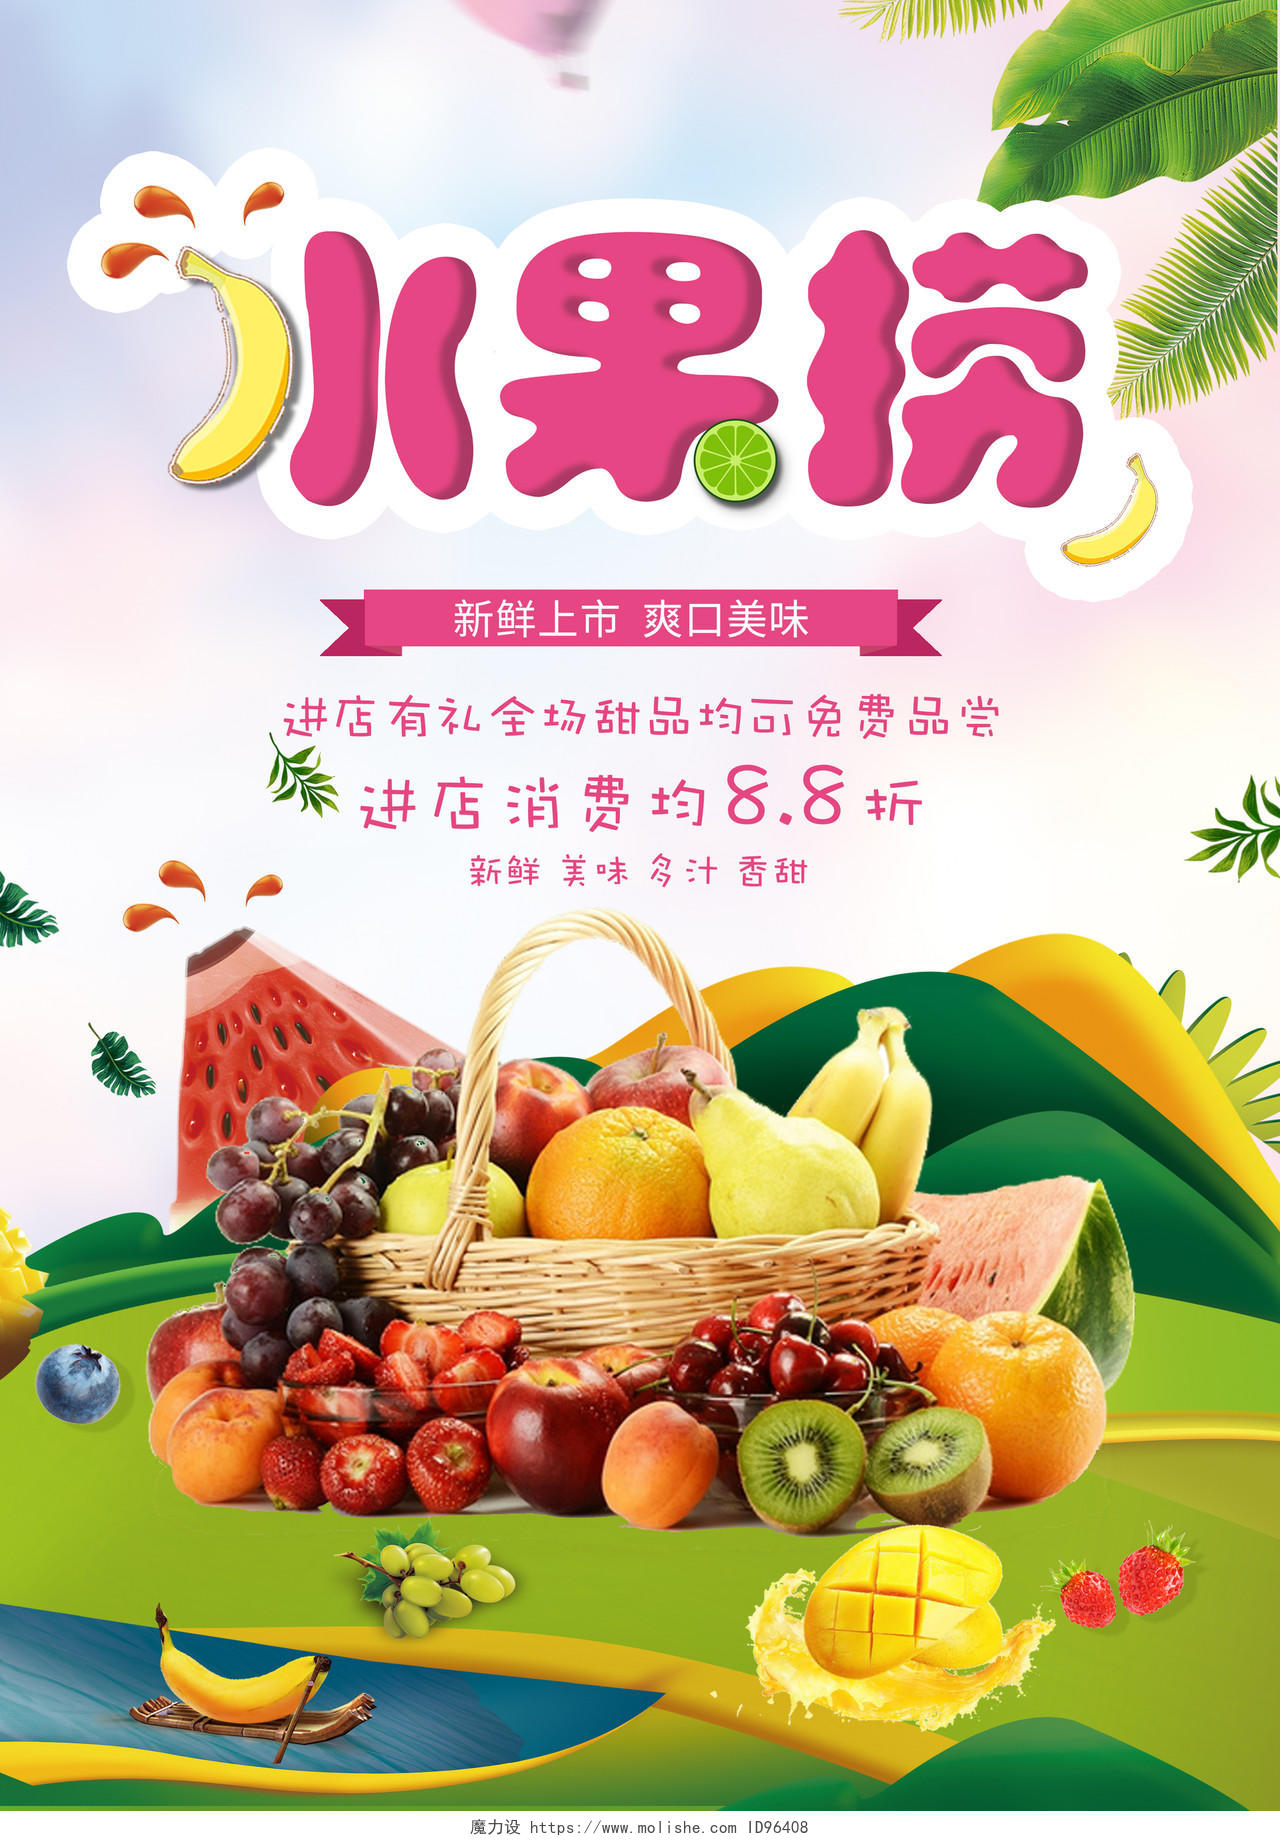 鲜艳水果捞销售宣传活动促销海报